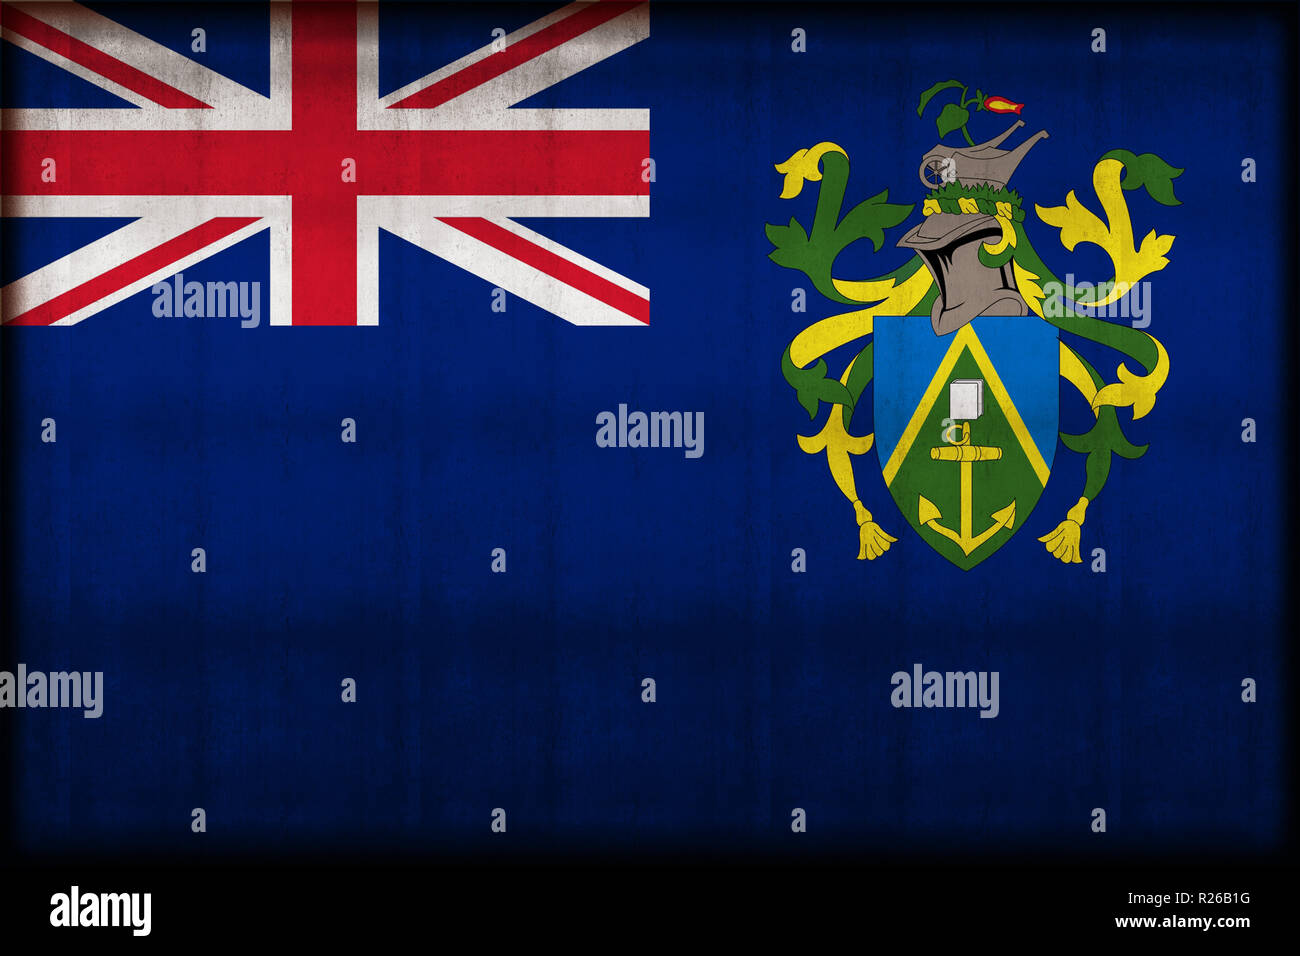 Pitcairninseln rusty flag Abbildung. Verwendbar für Hintergrund und Textur. Stockfoto